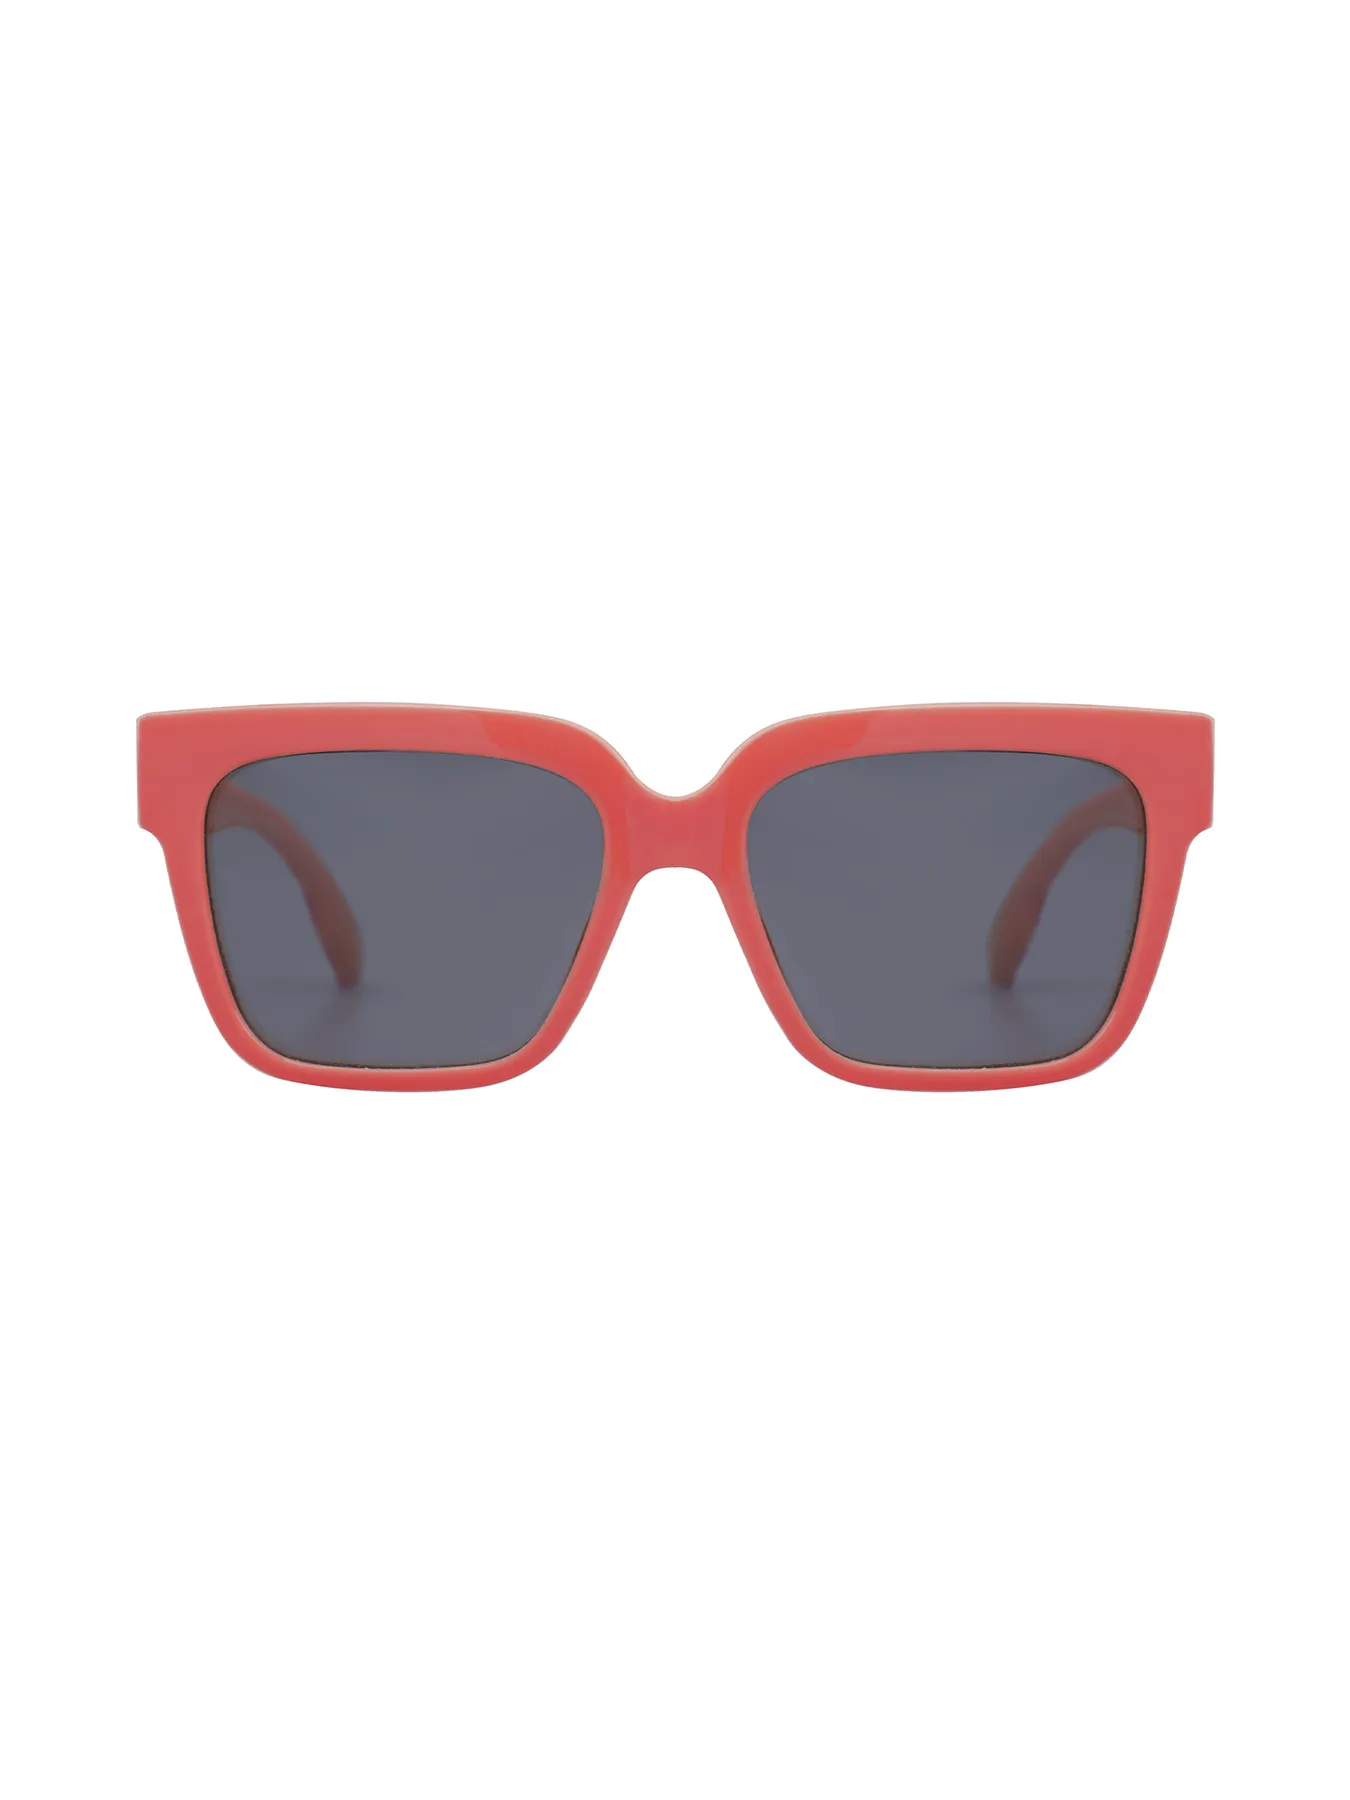 Sunglasses Pippi Longstocking Red/Green